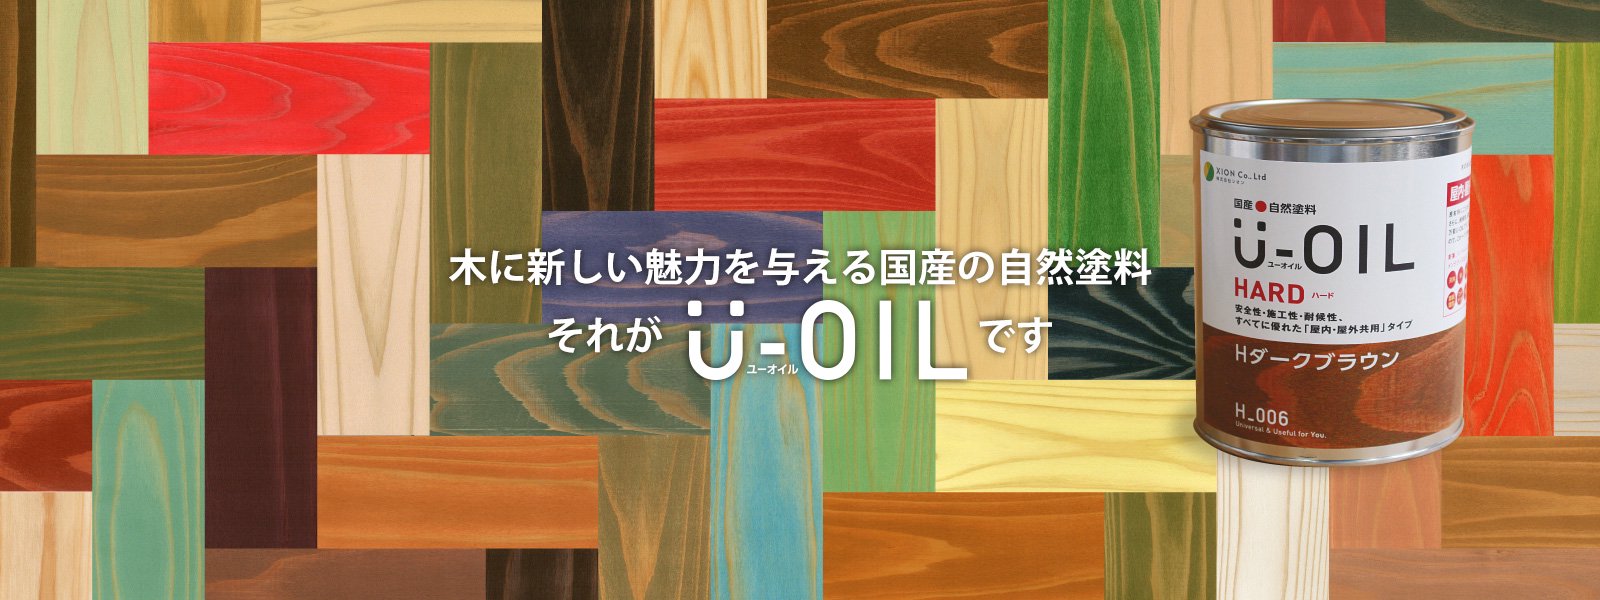 新しい U-OIL ユーオイル オイルステイン ハード H44 アンチークパイン 9L 屋内外 木部用 国産 自然塗料